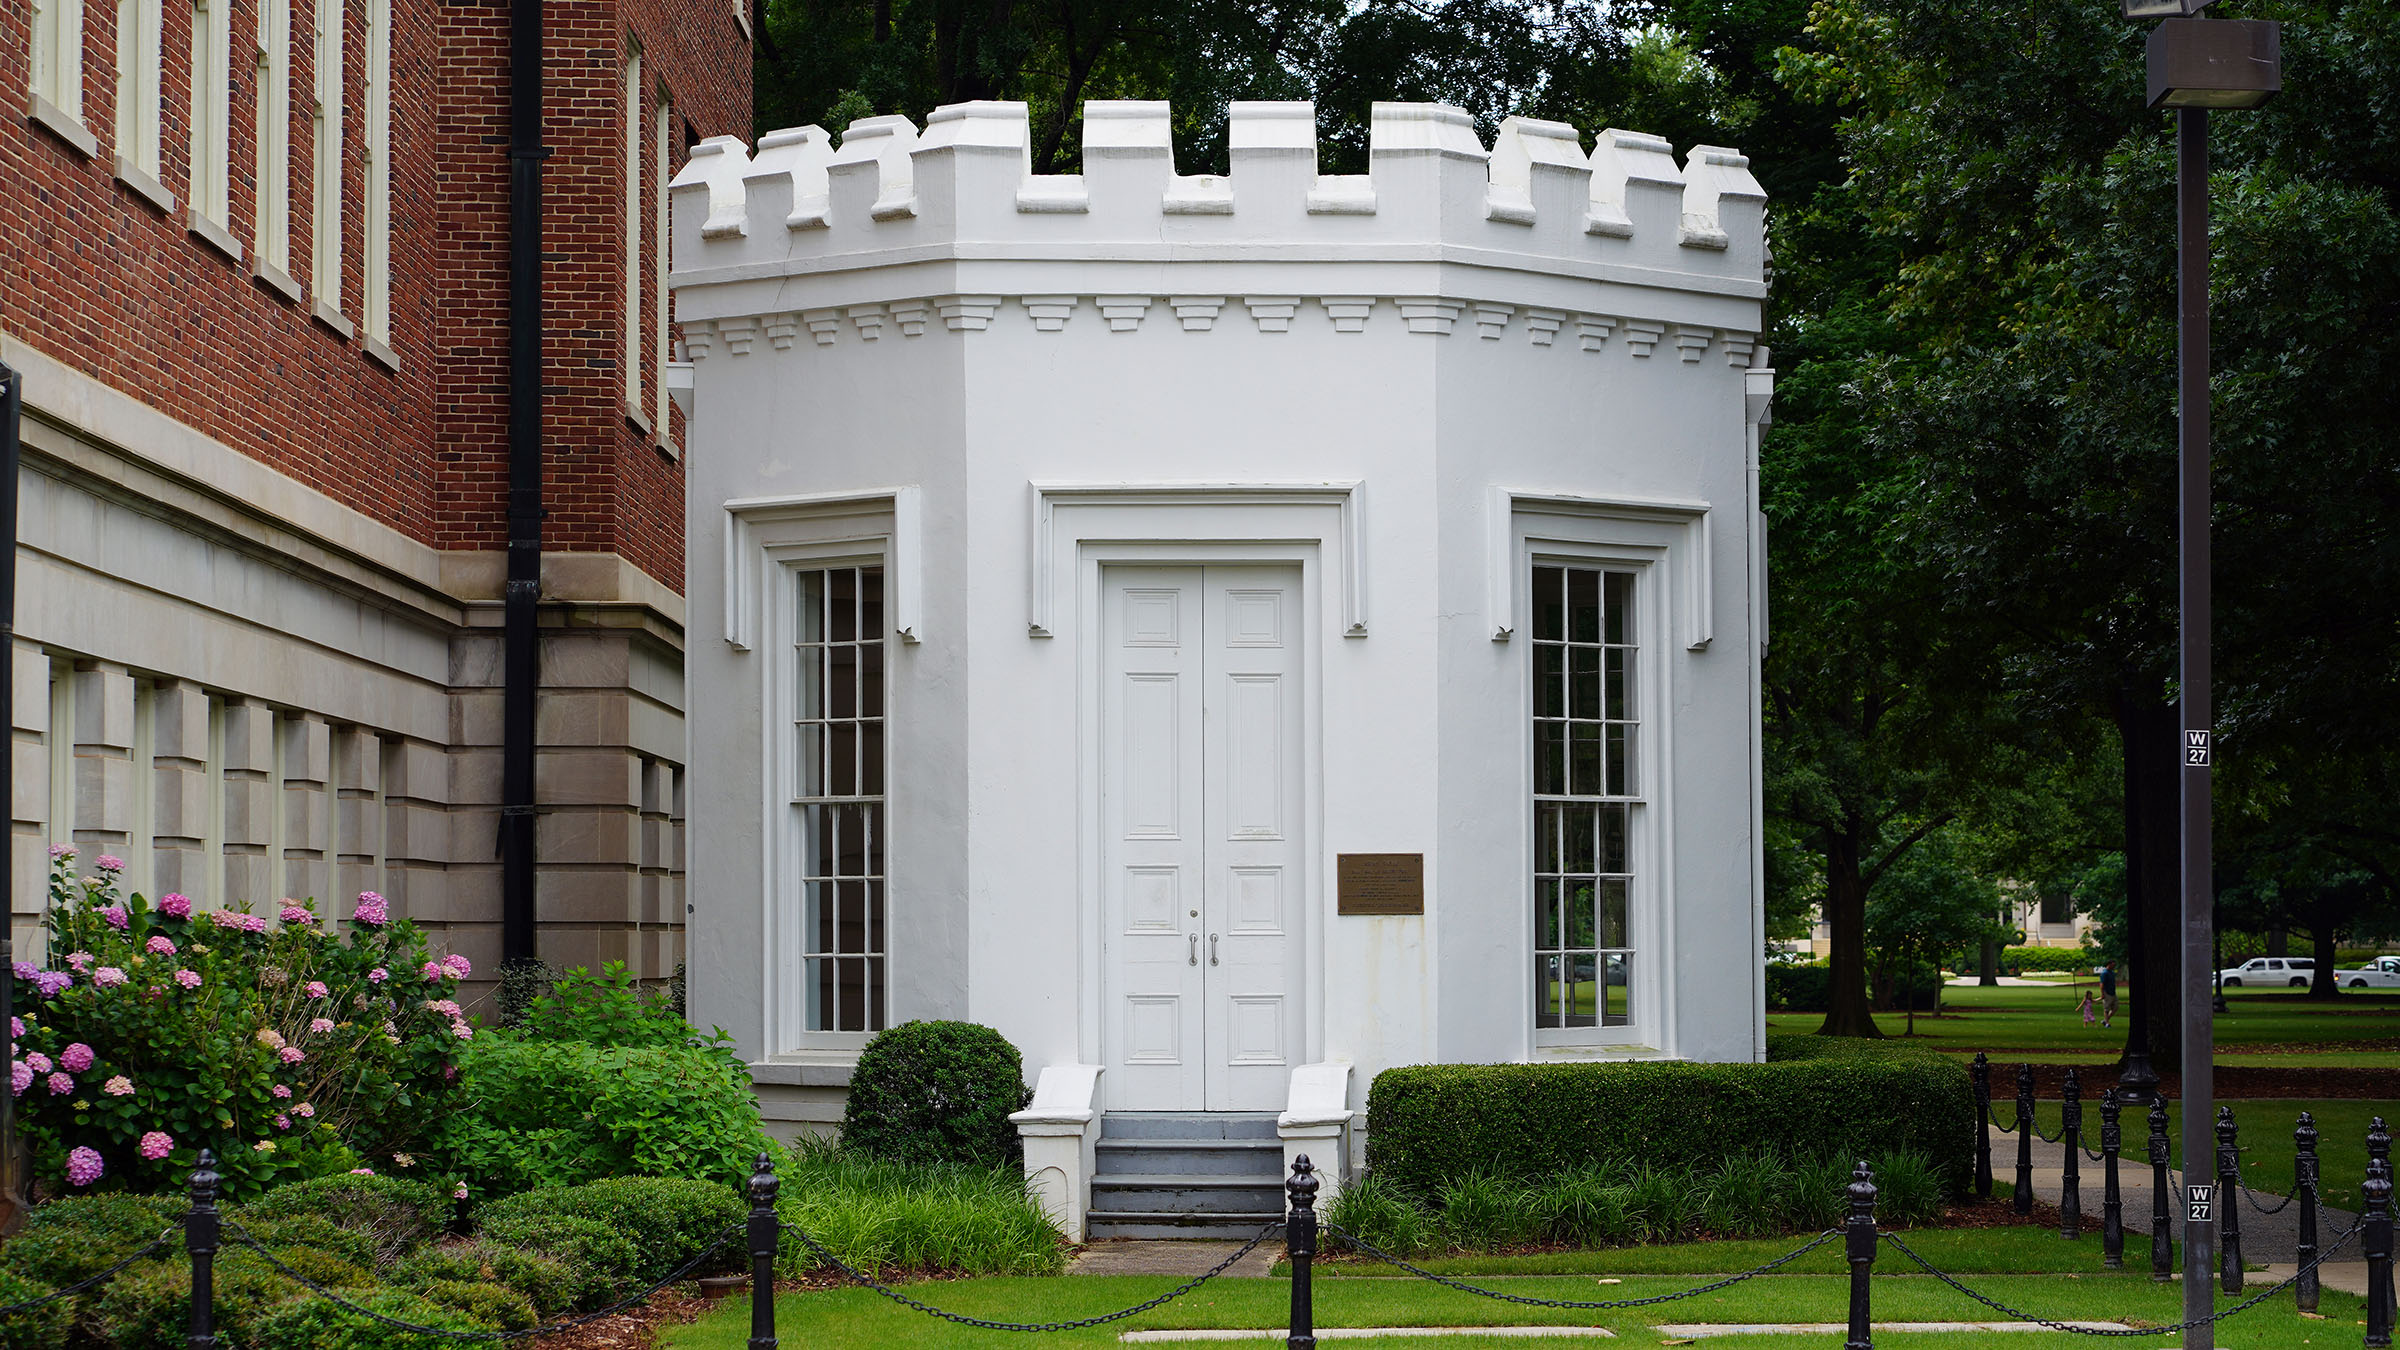 Little Round House, 1862, University of Alabama, Tuscaloosa